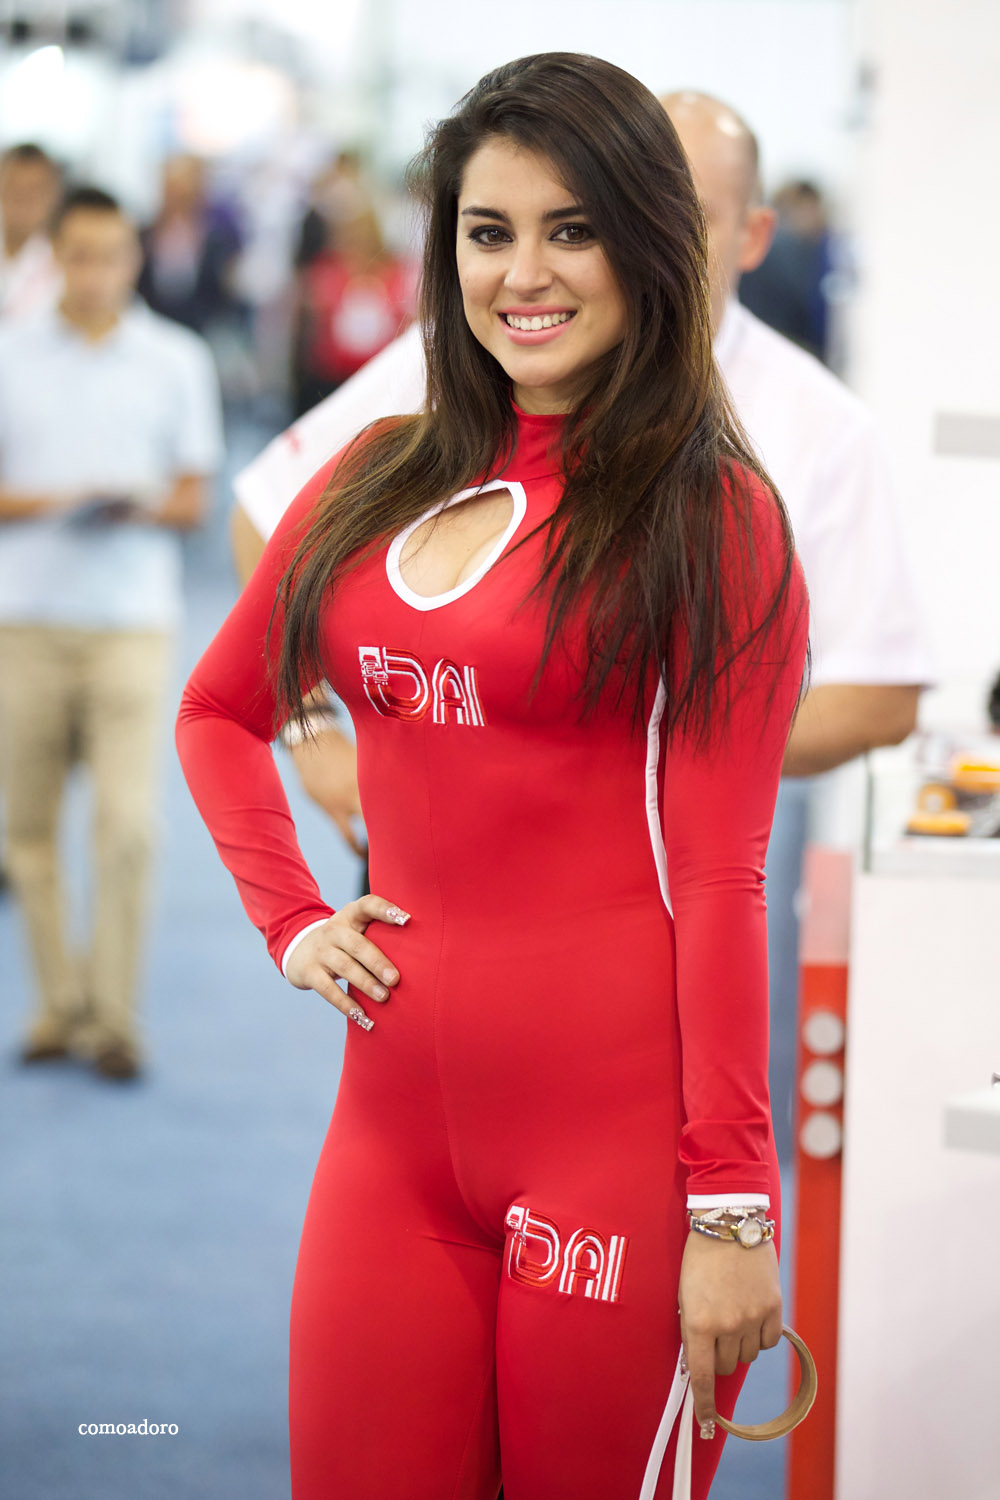 promo girl in red spandex (10).jpg